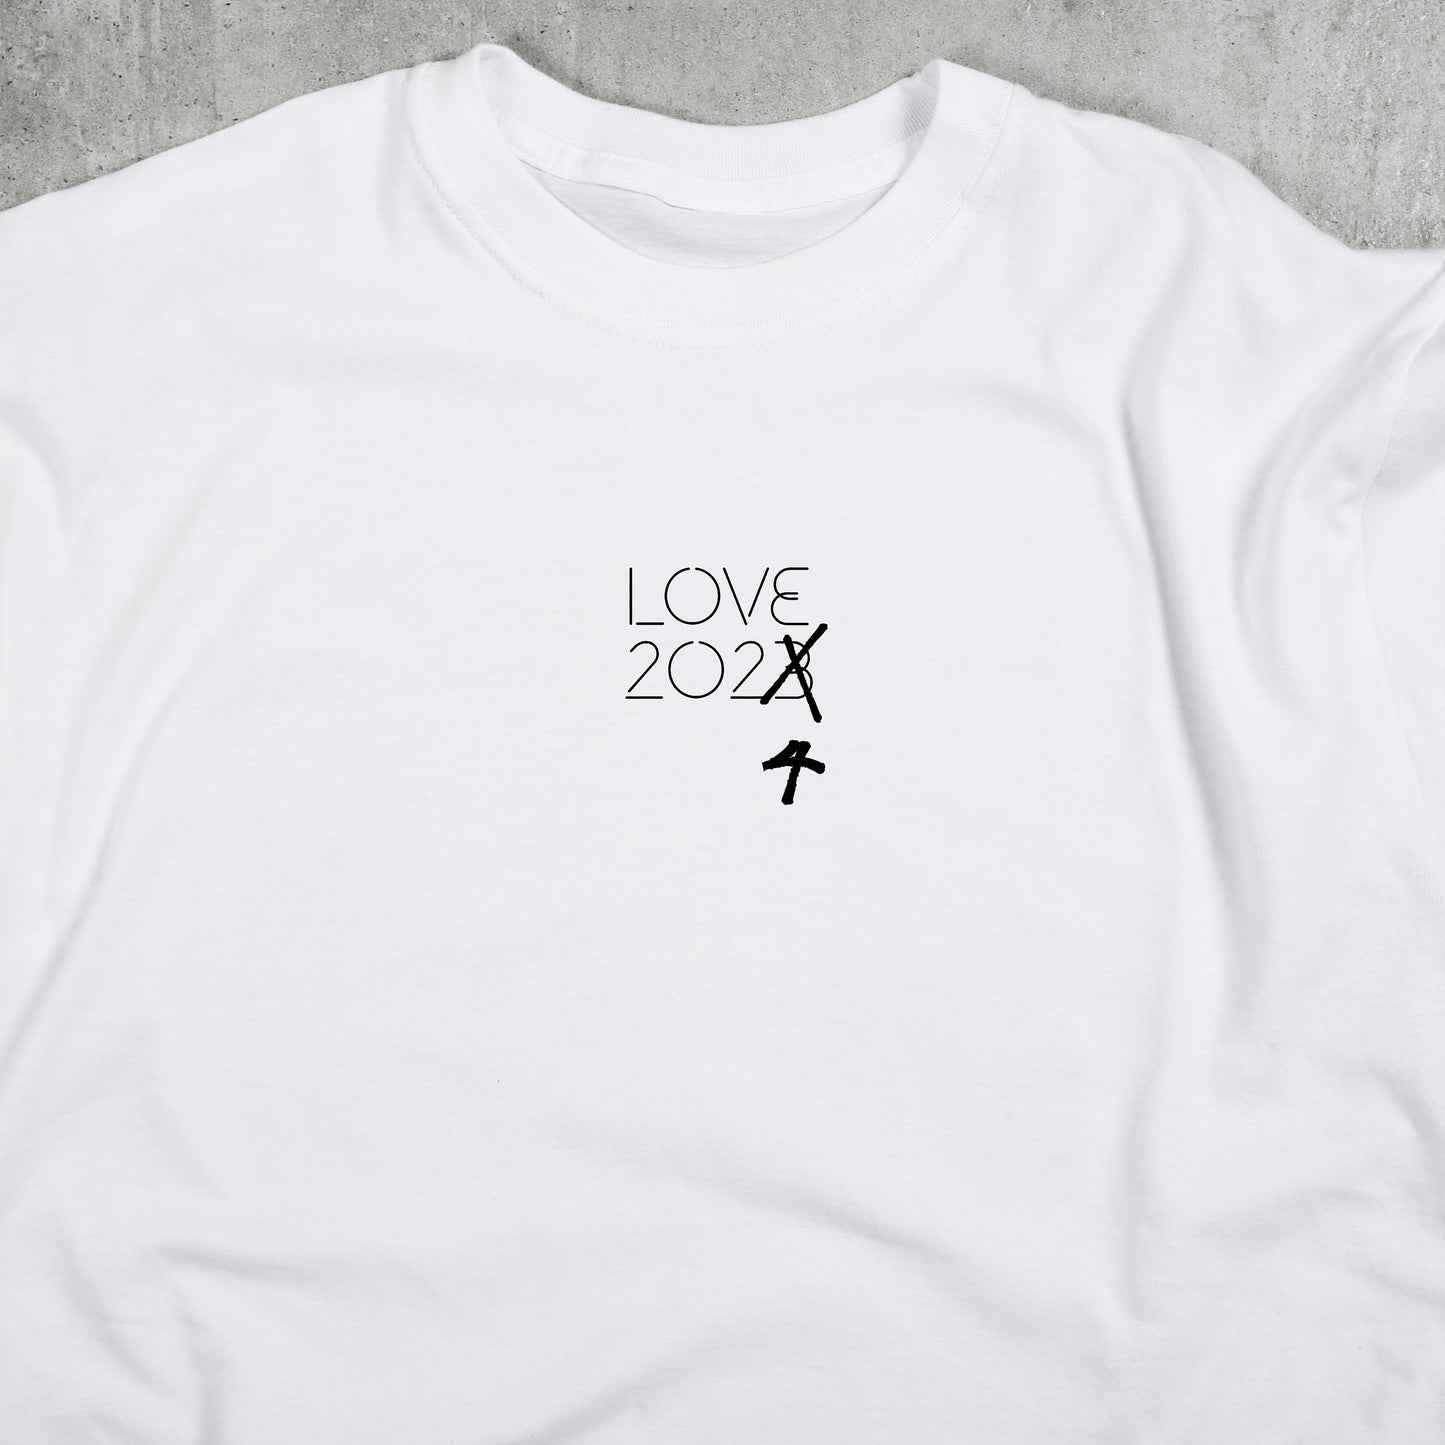 Love 2024 shirt